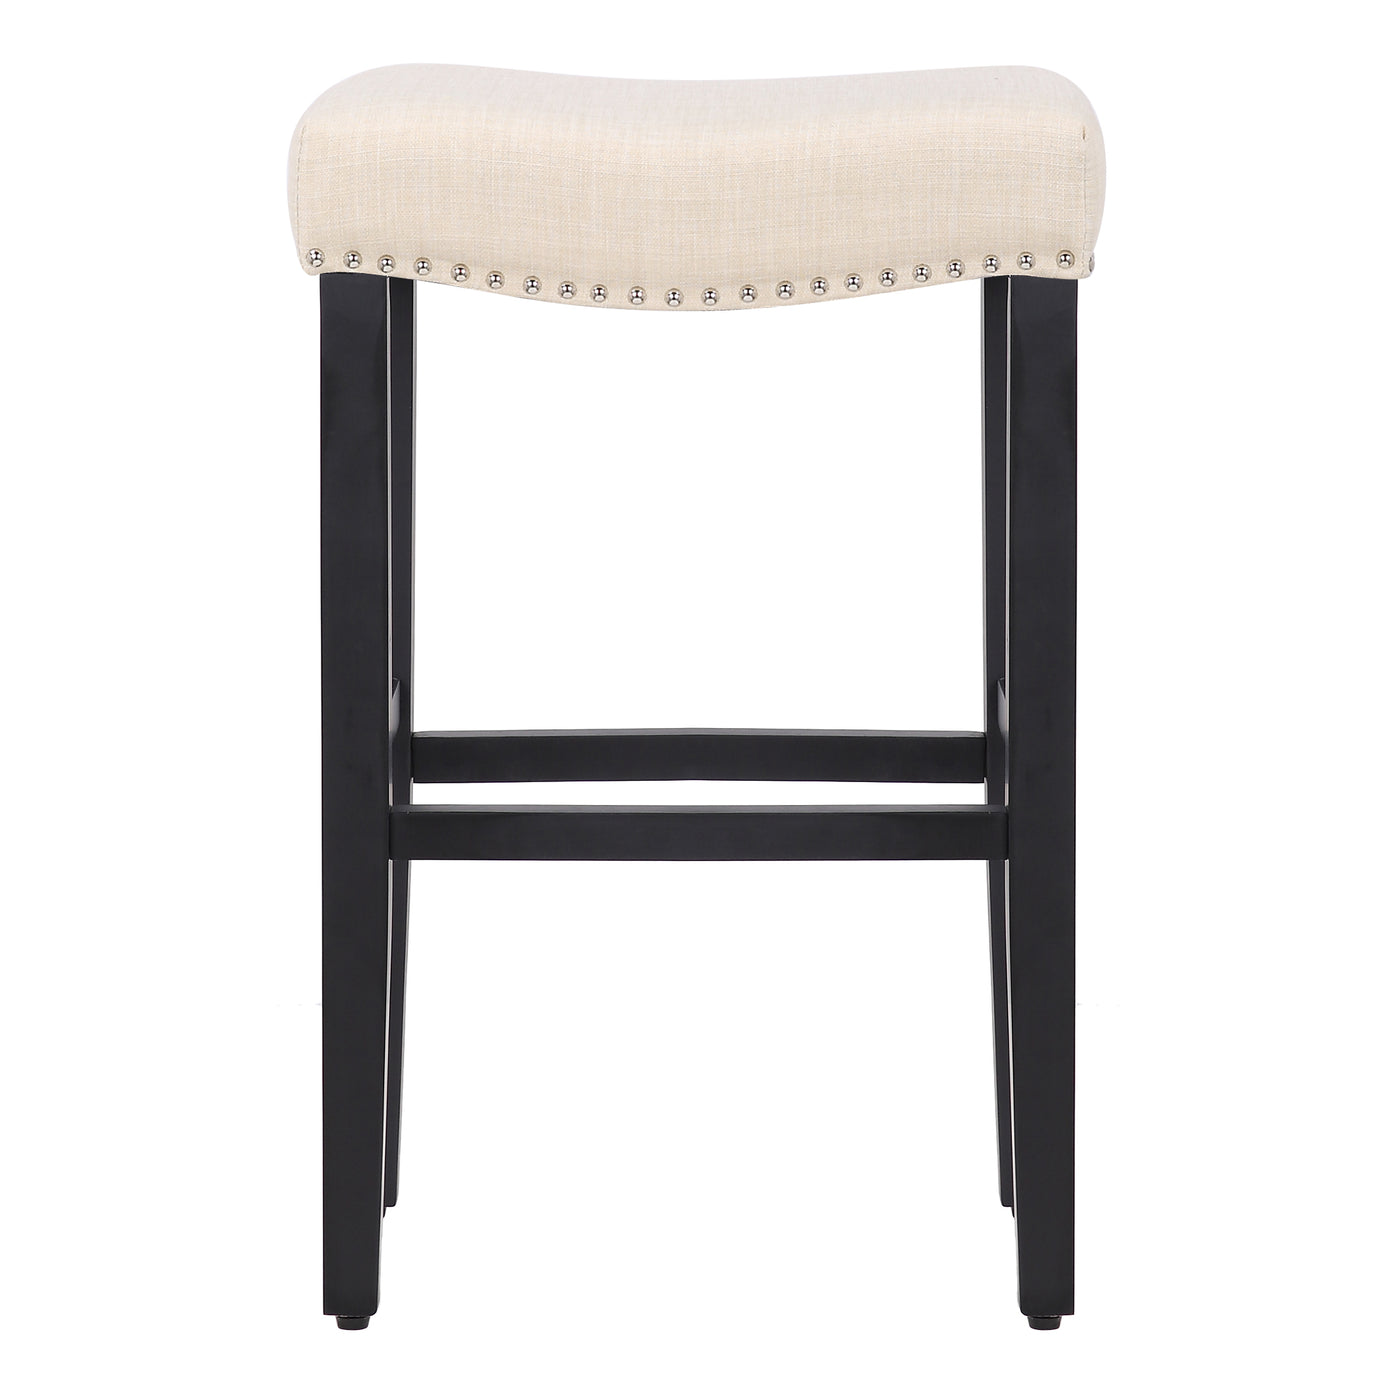 Lenox 29" Upholstered Saddle Seat Bar Stool (Set of 2), Black